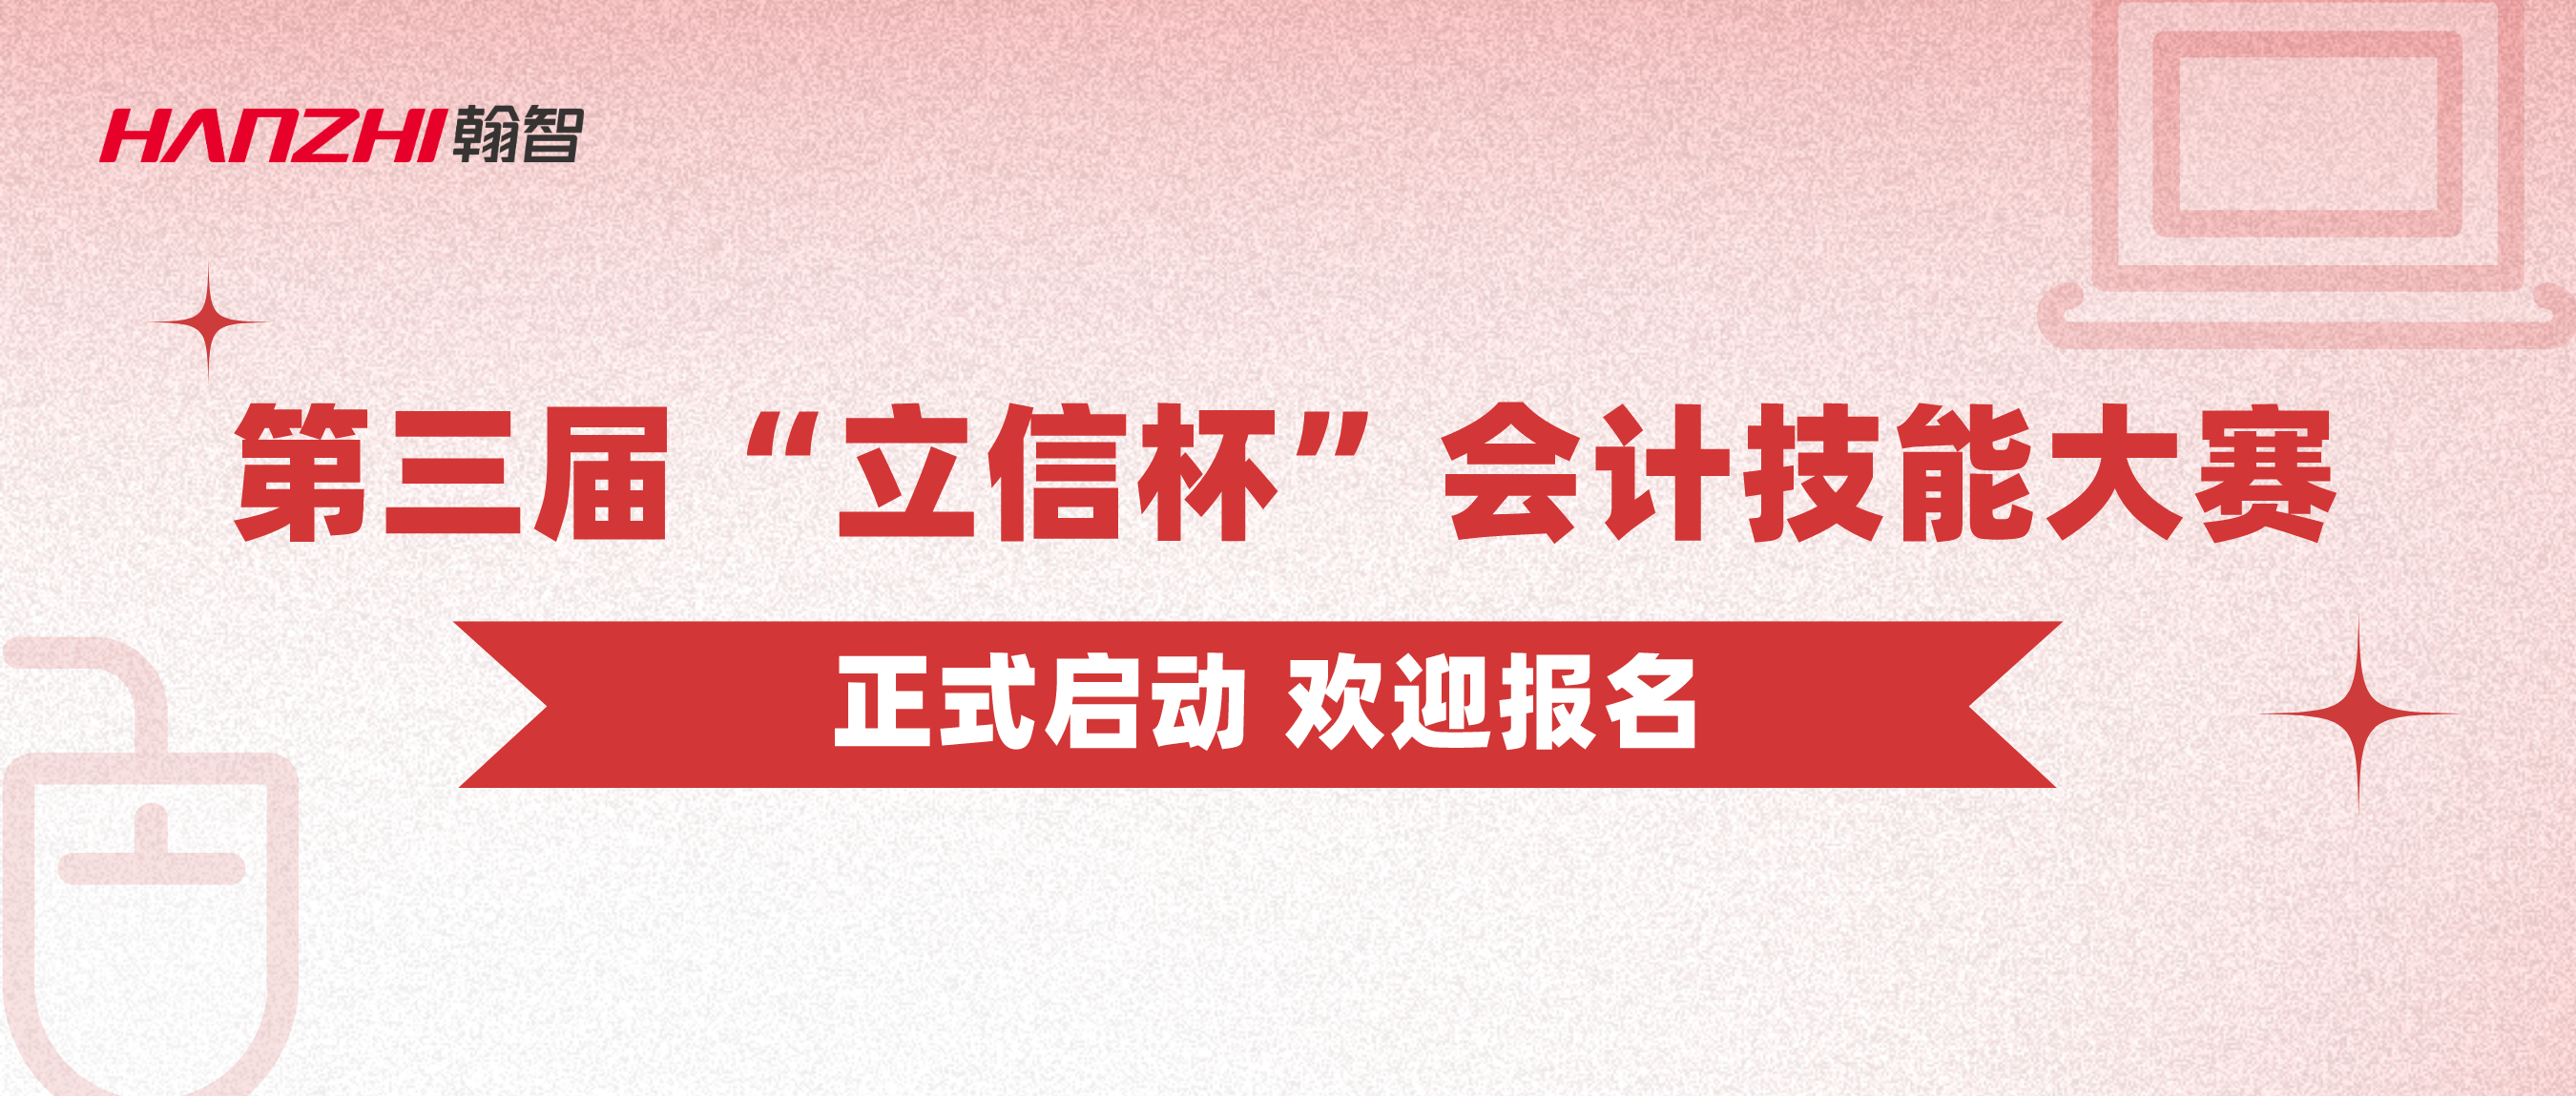 中国商业会计学会主办 第三届“立信杯”会计技能大赛正式启动！